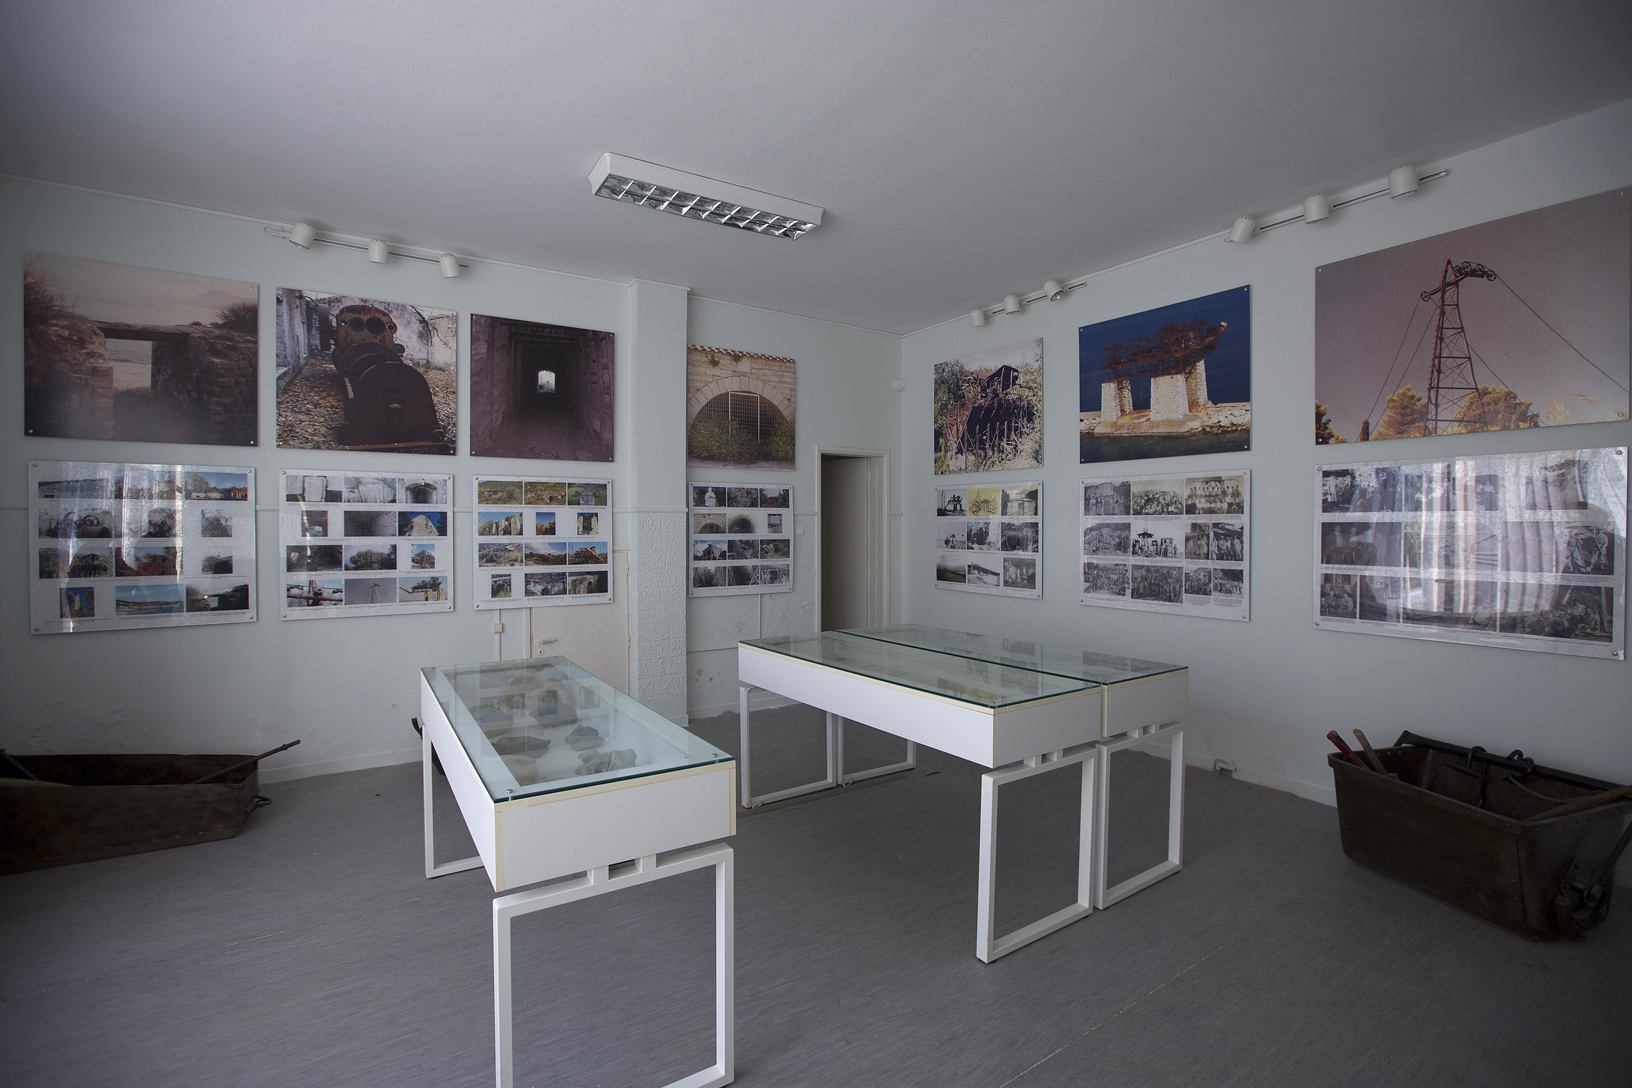 Μουσείο ανθρακωρύχου, χωριό Βίταλα. Φωτογραφία: ©Βασίλης Συκάς, για τον Δήμο Κύμης-Αλιβερίου